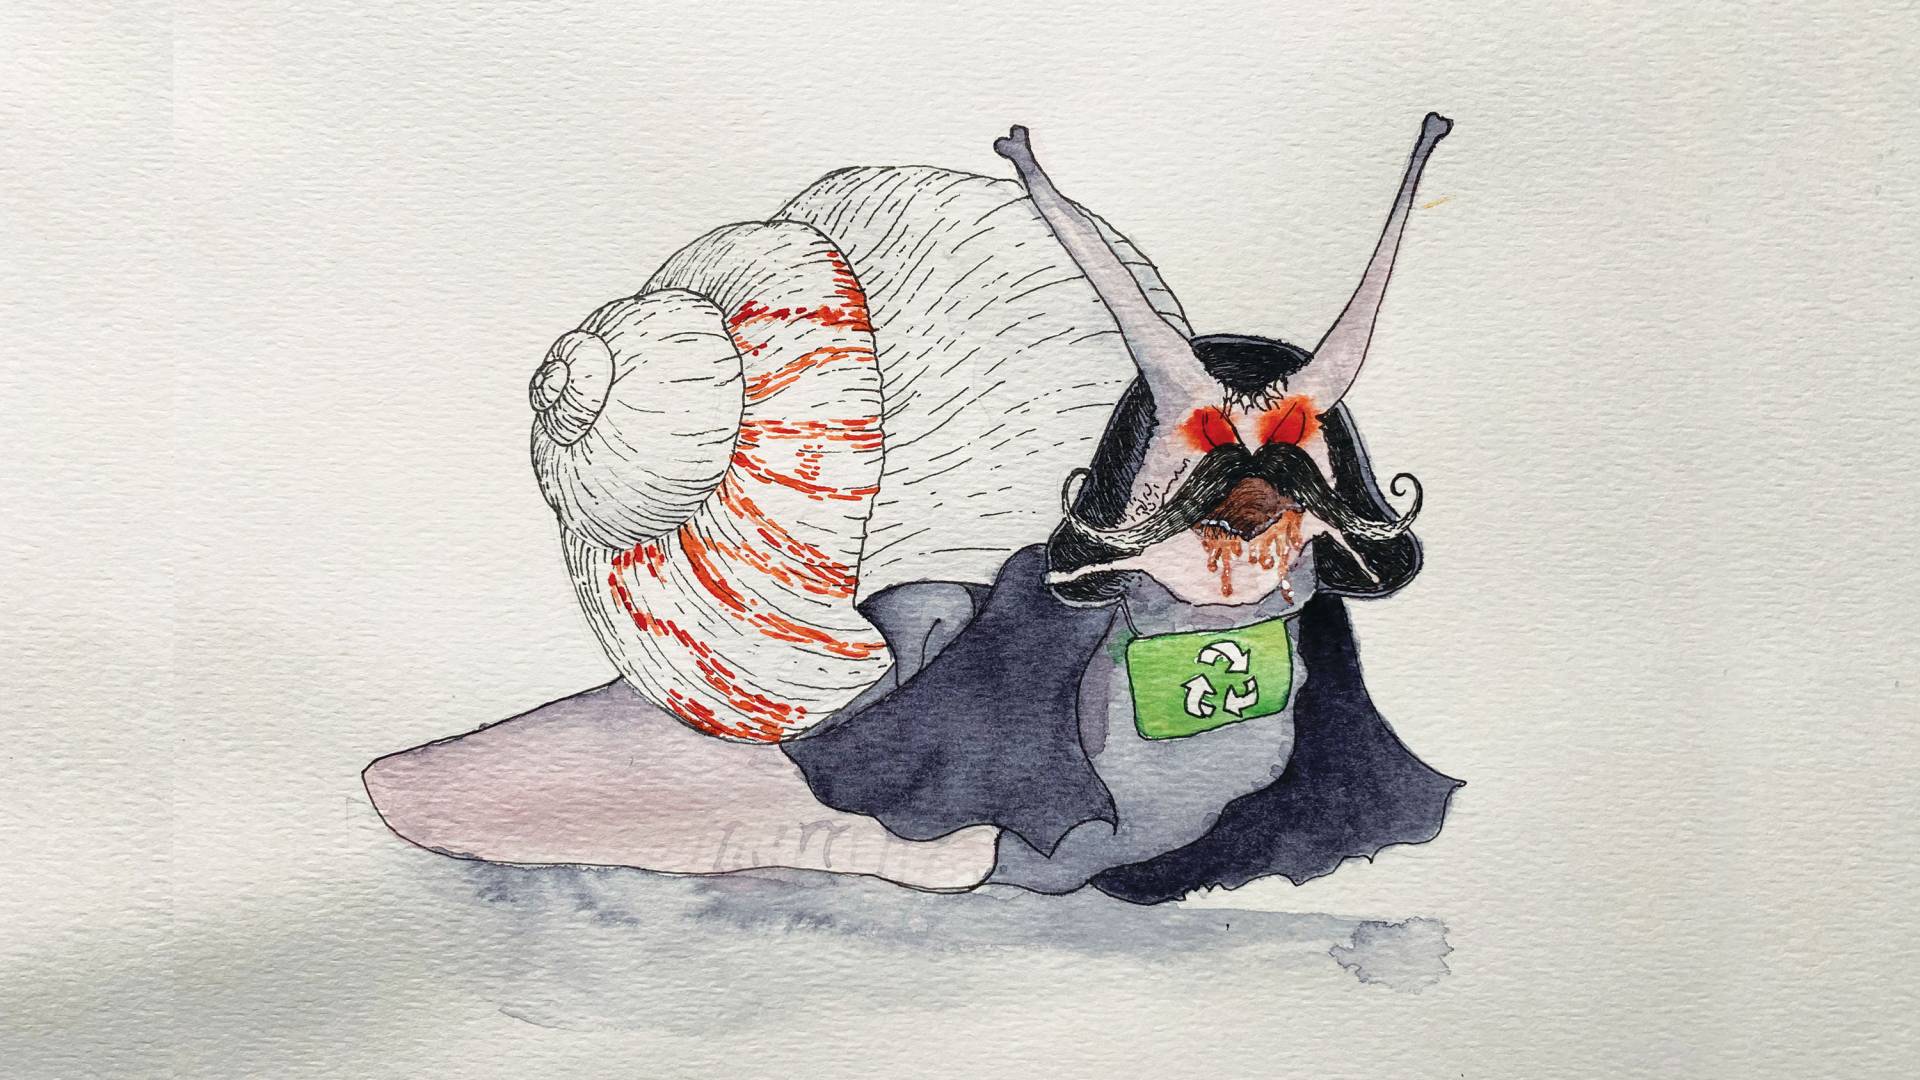 Villainous snail